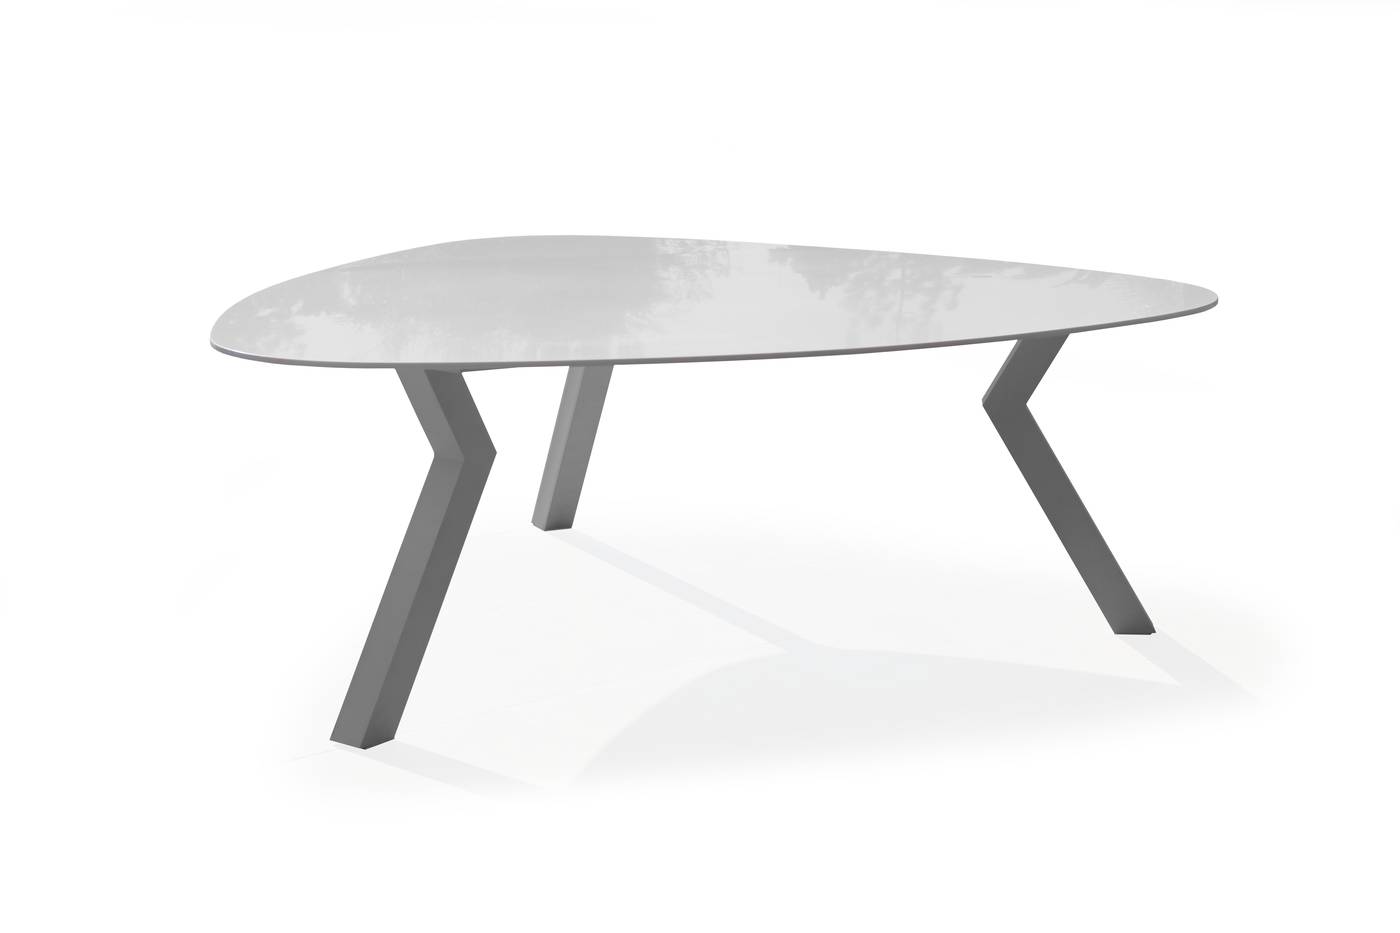 Mesa lujo triangular de 200 cm, con tablero de Krion de calidad superior. Estructura robusta de aluminio color blanco.